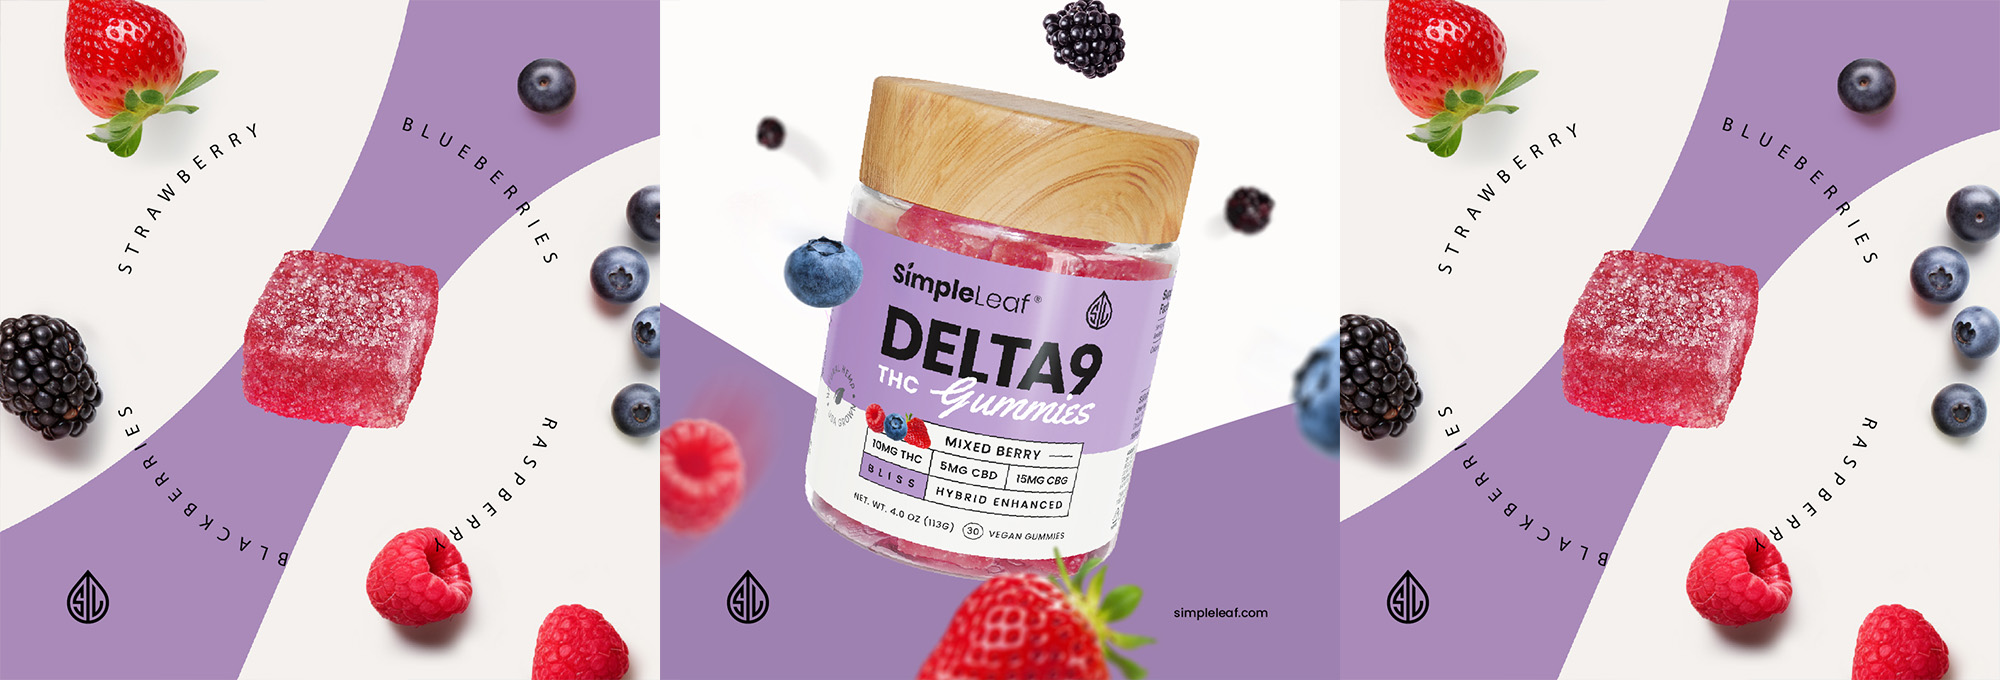 Delta-9 THC Gummies - Organic Hemp Derived - HYBRID gummy